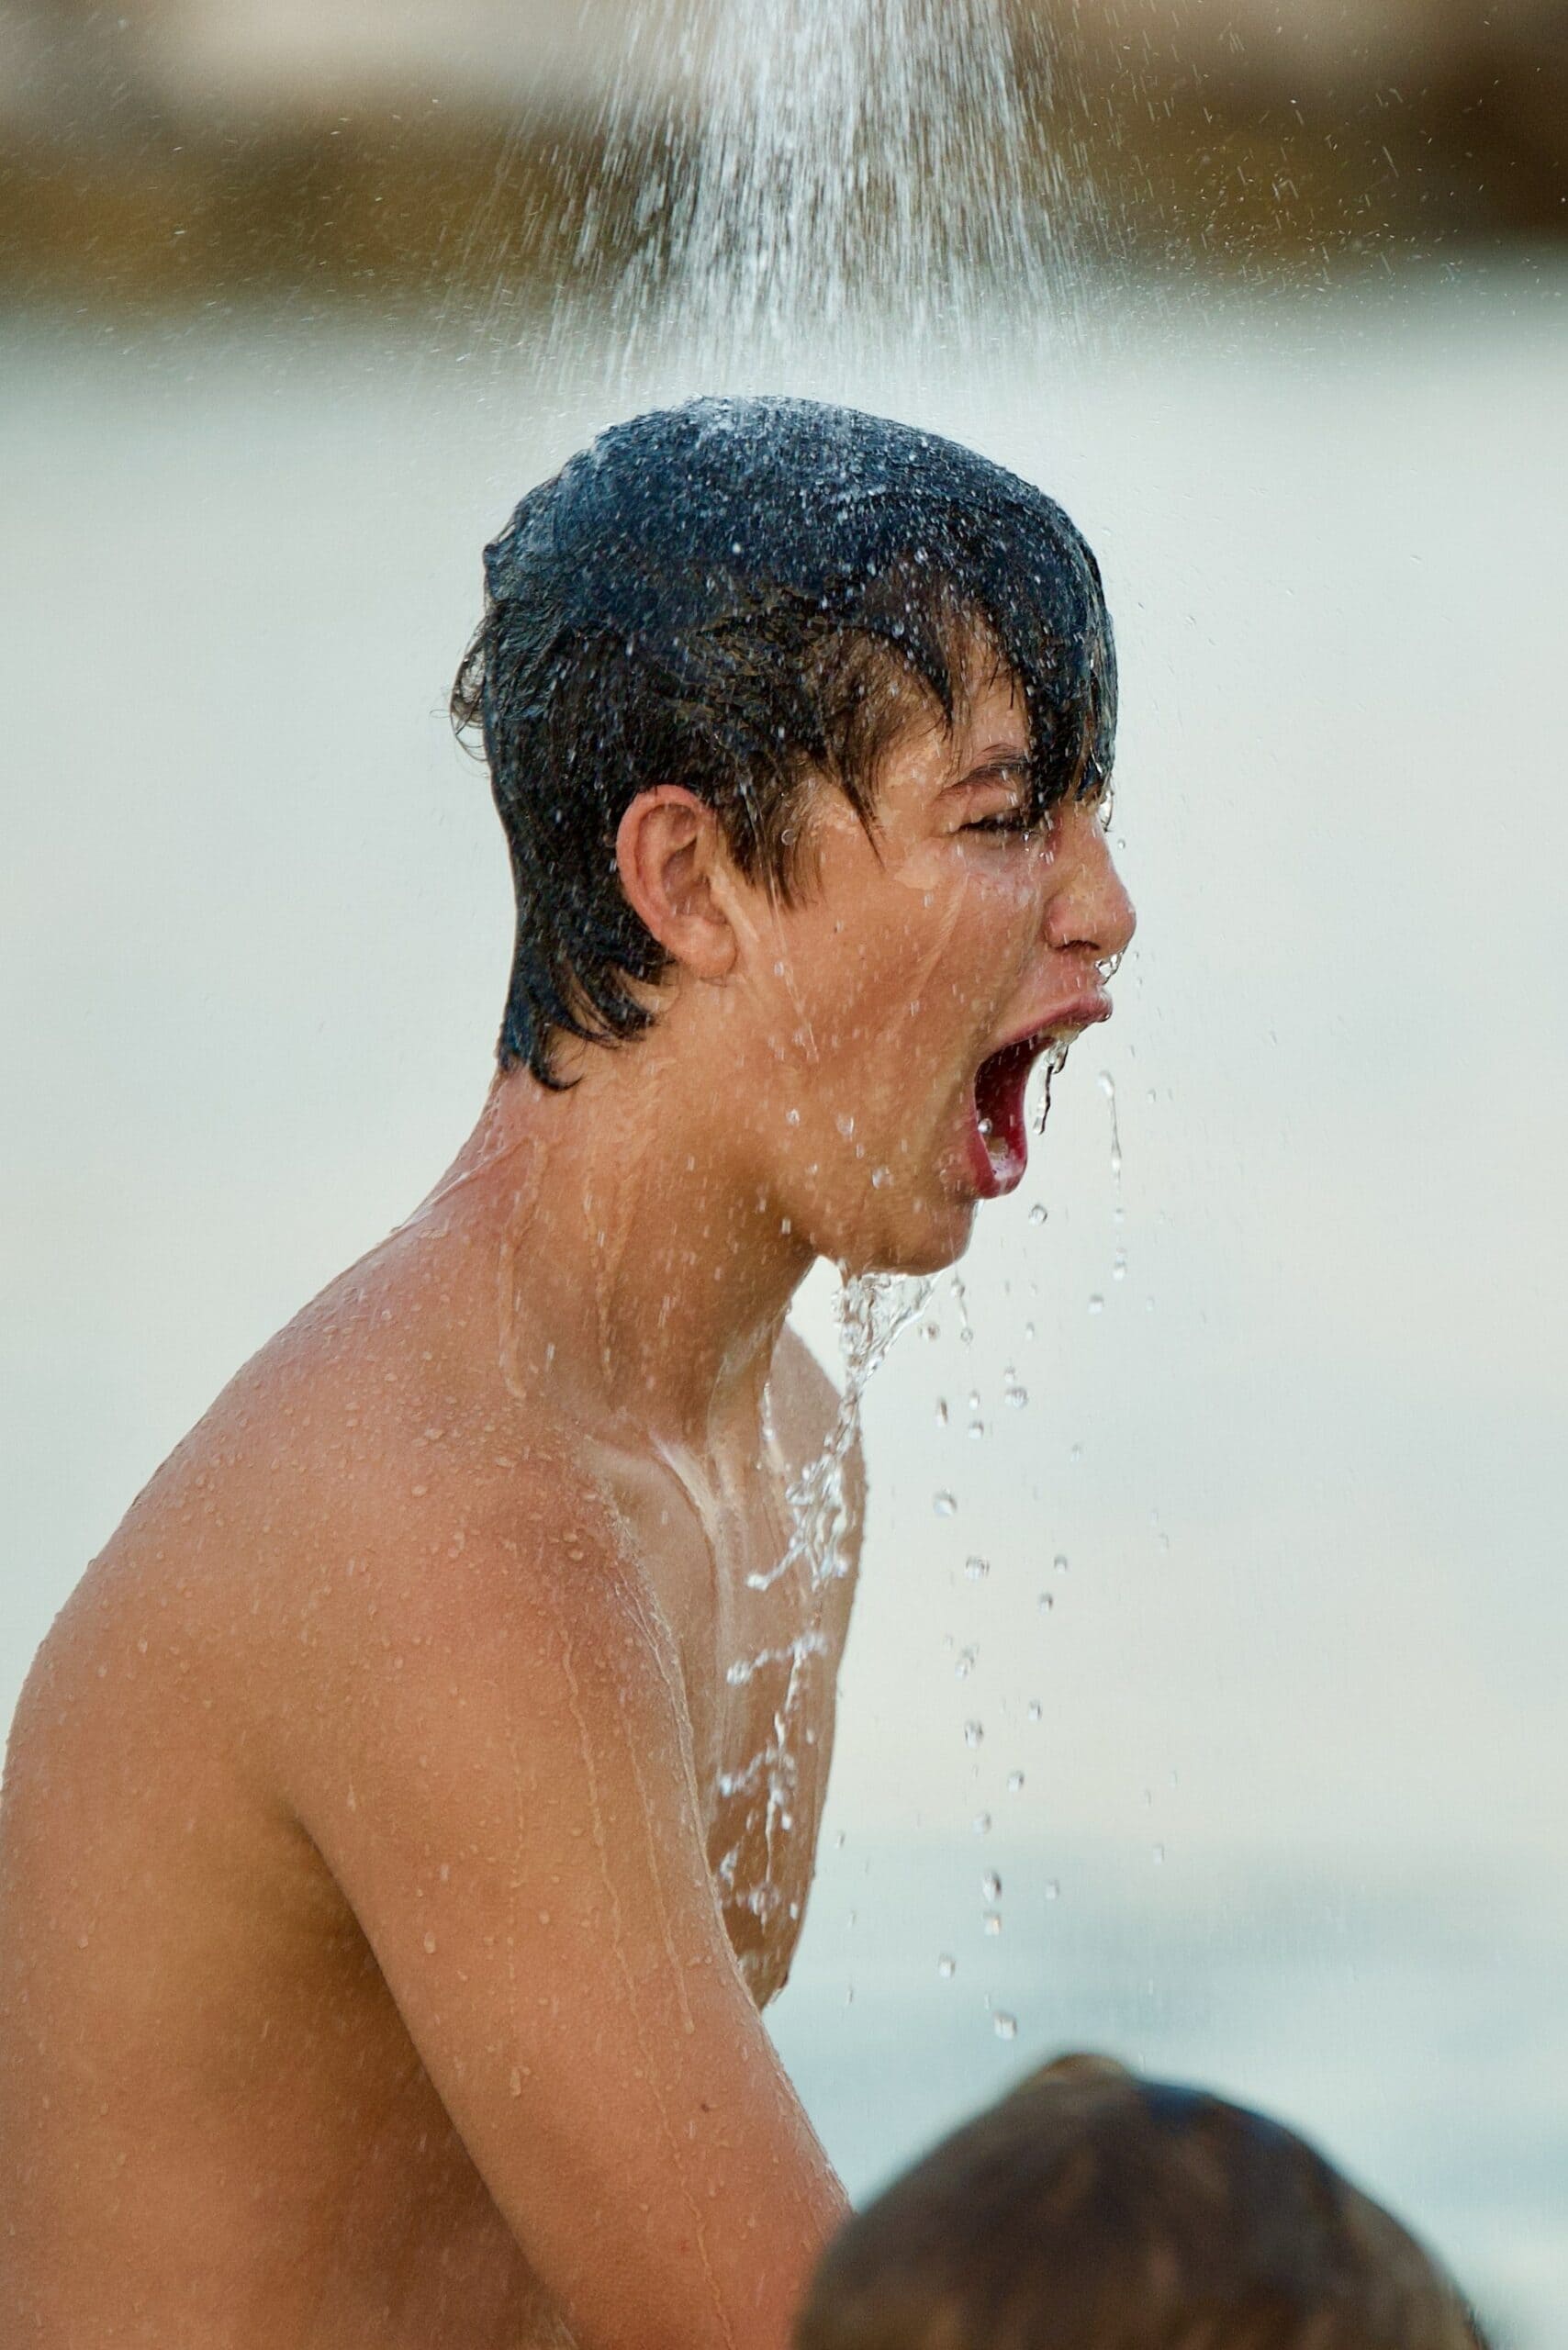 Tipps gegen Hitze: Wechseldusche oder lauwarme Dusche, so wie der Junge auf dem Foto